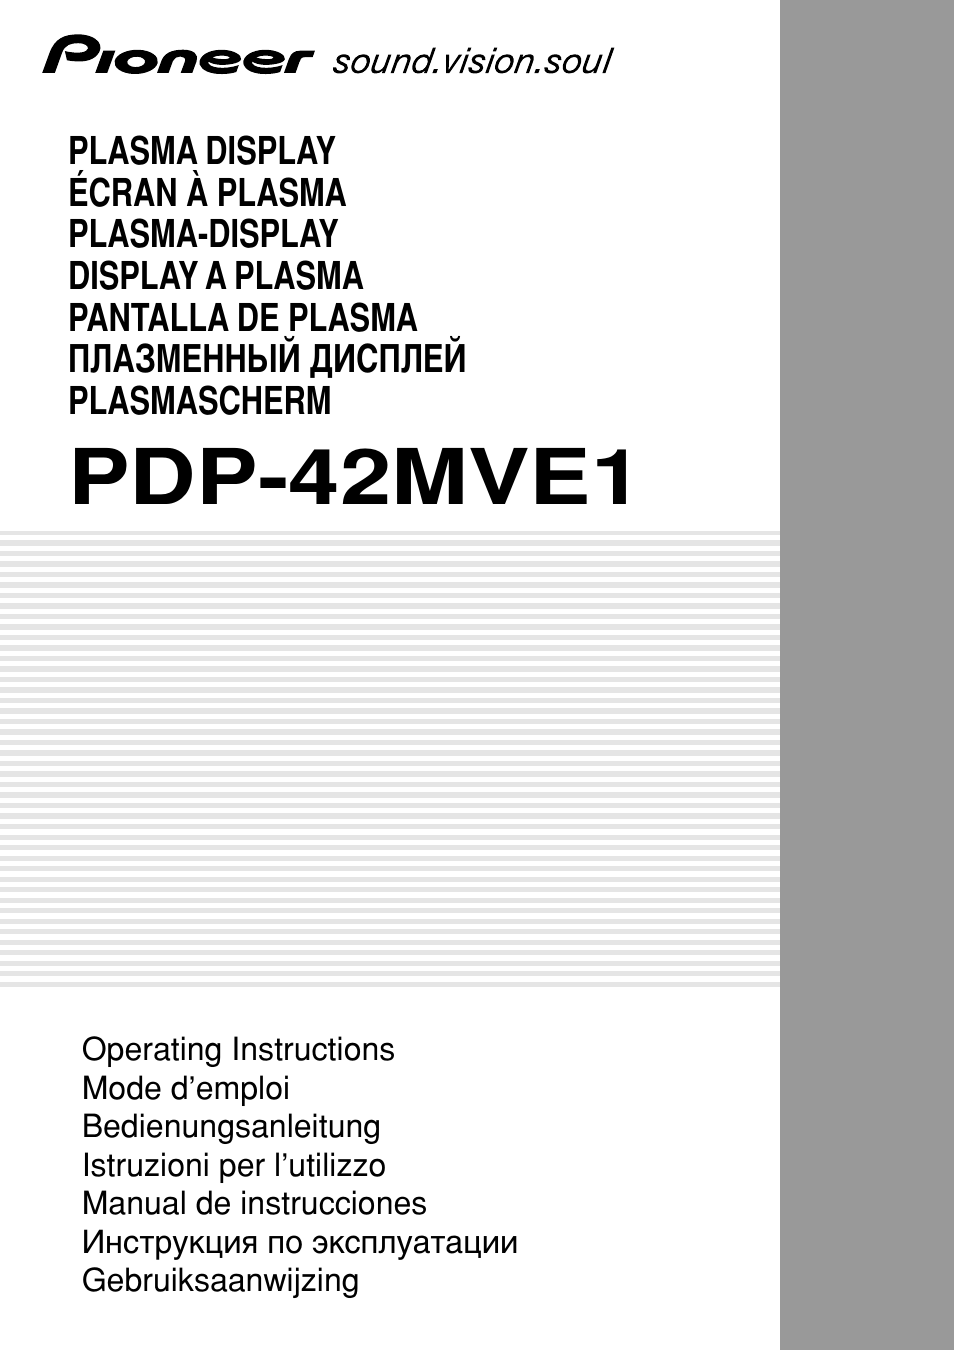 Pioneer PLASMA DISPLAY User Manual | 266 pages